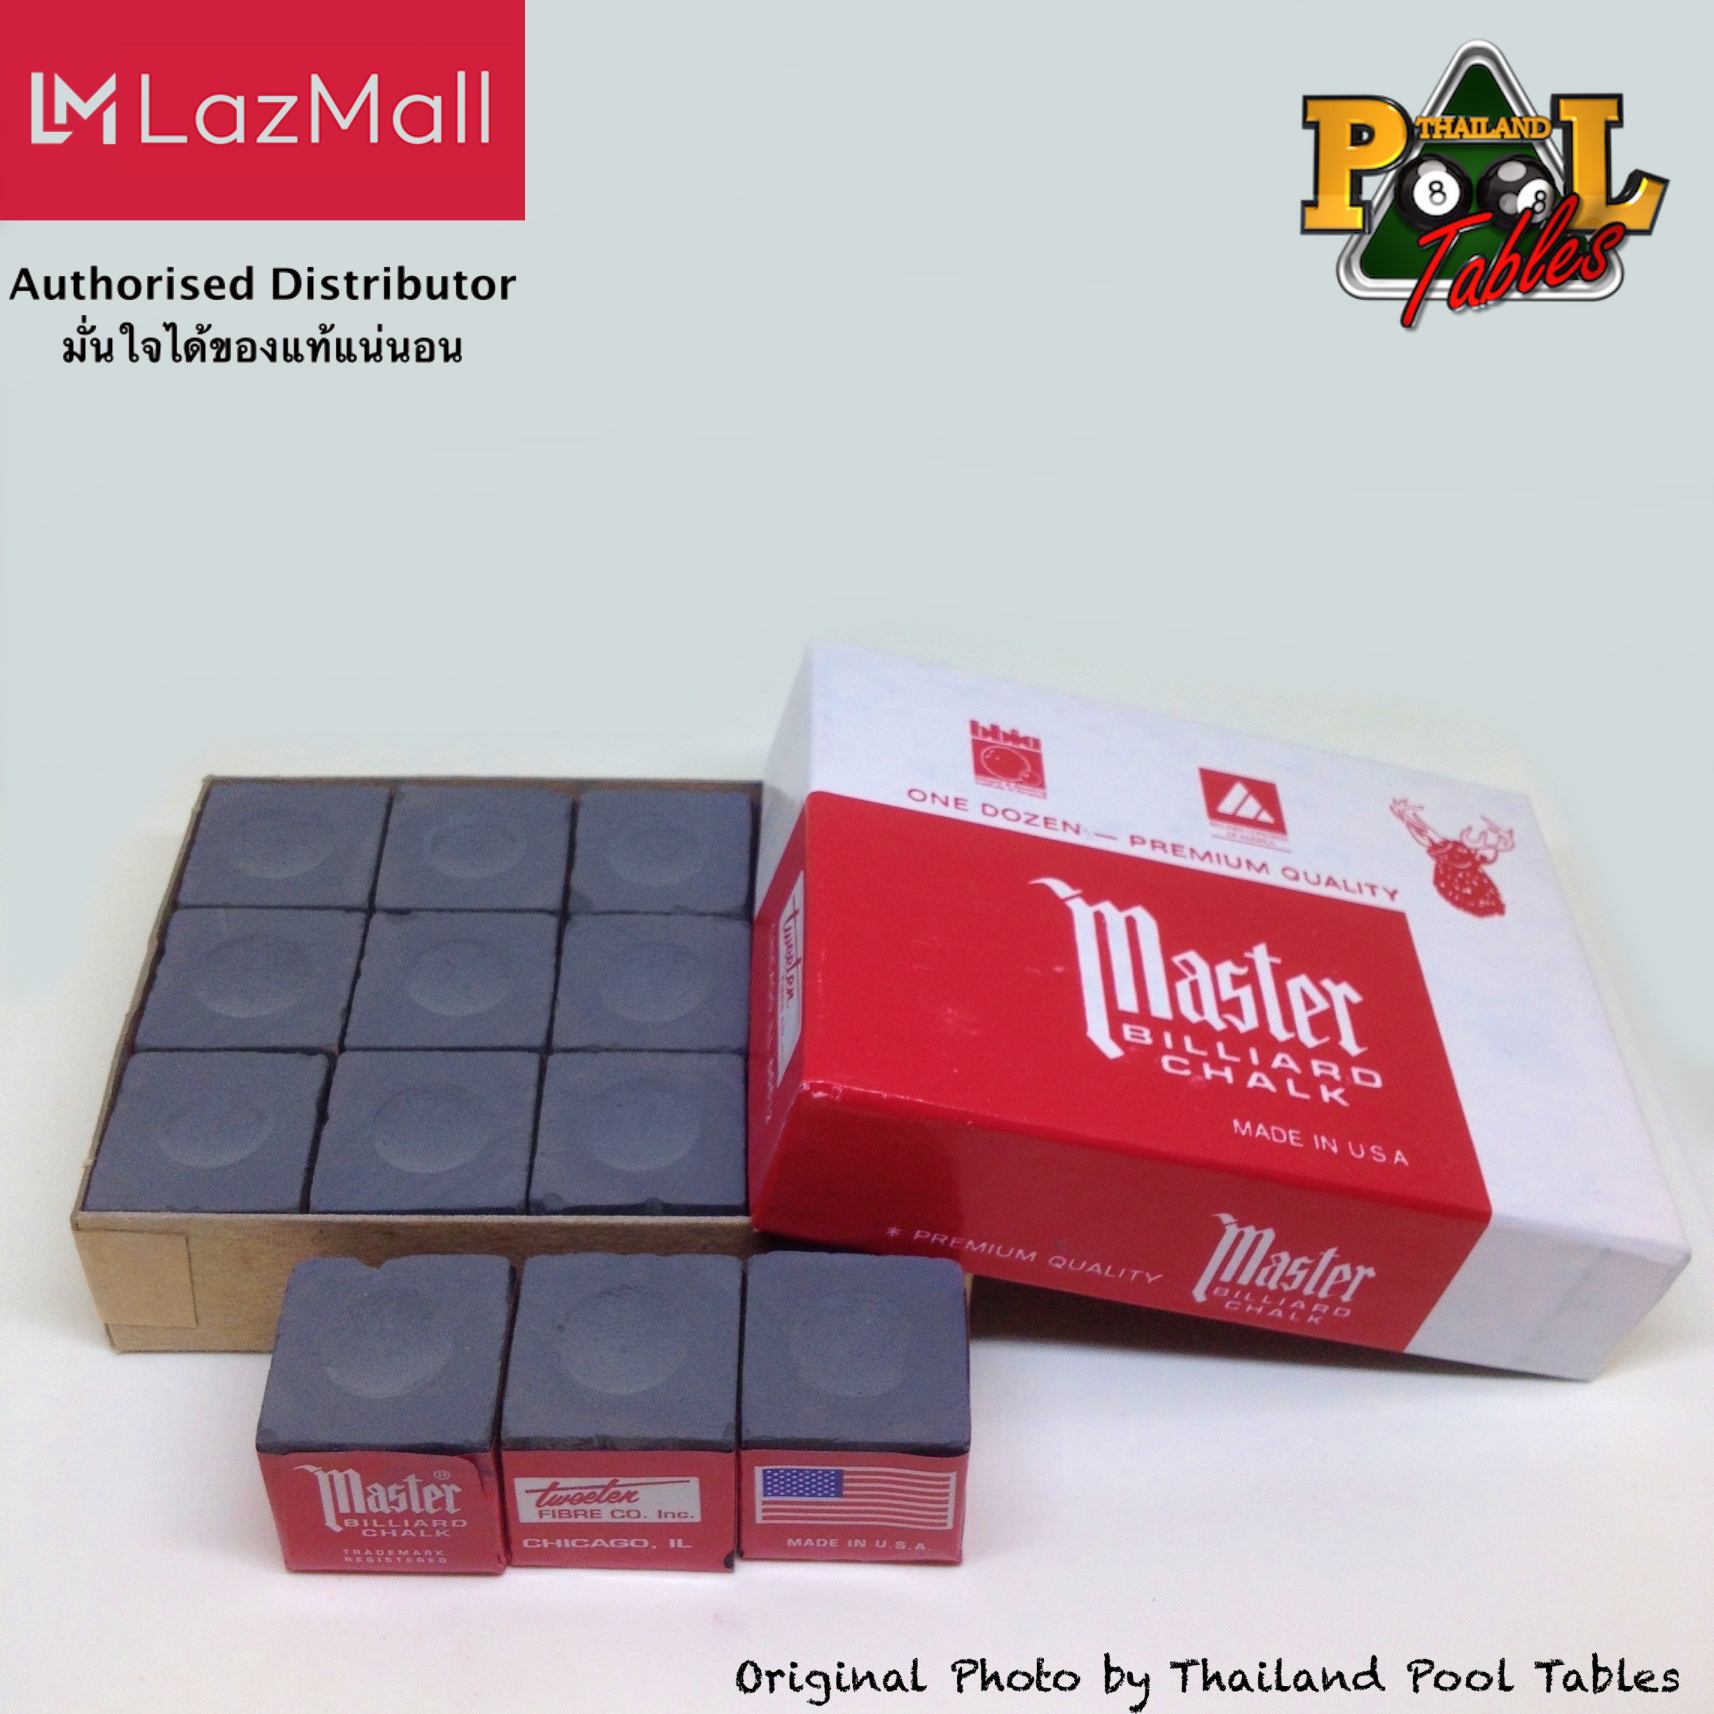 ชอล์คฝนหัวคิวมาสเตอร์ Master Billiard/Pool Cue Chalk Box, 12 Cubes สี Charcoal สี Charcoal